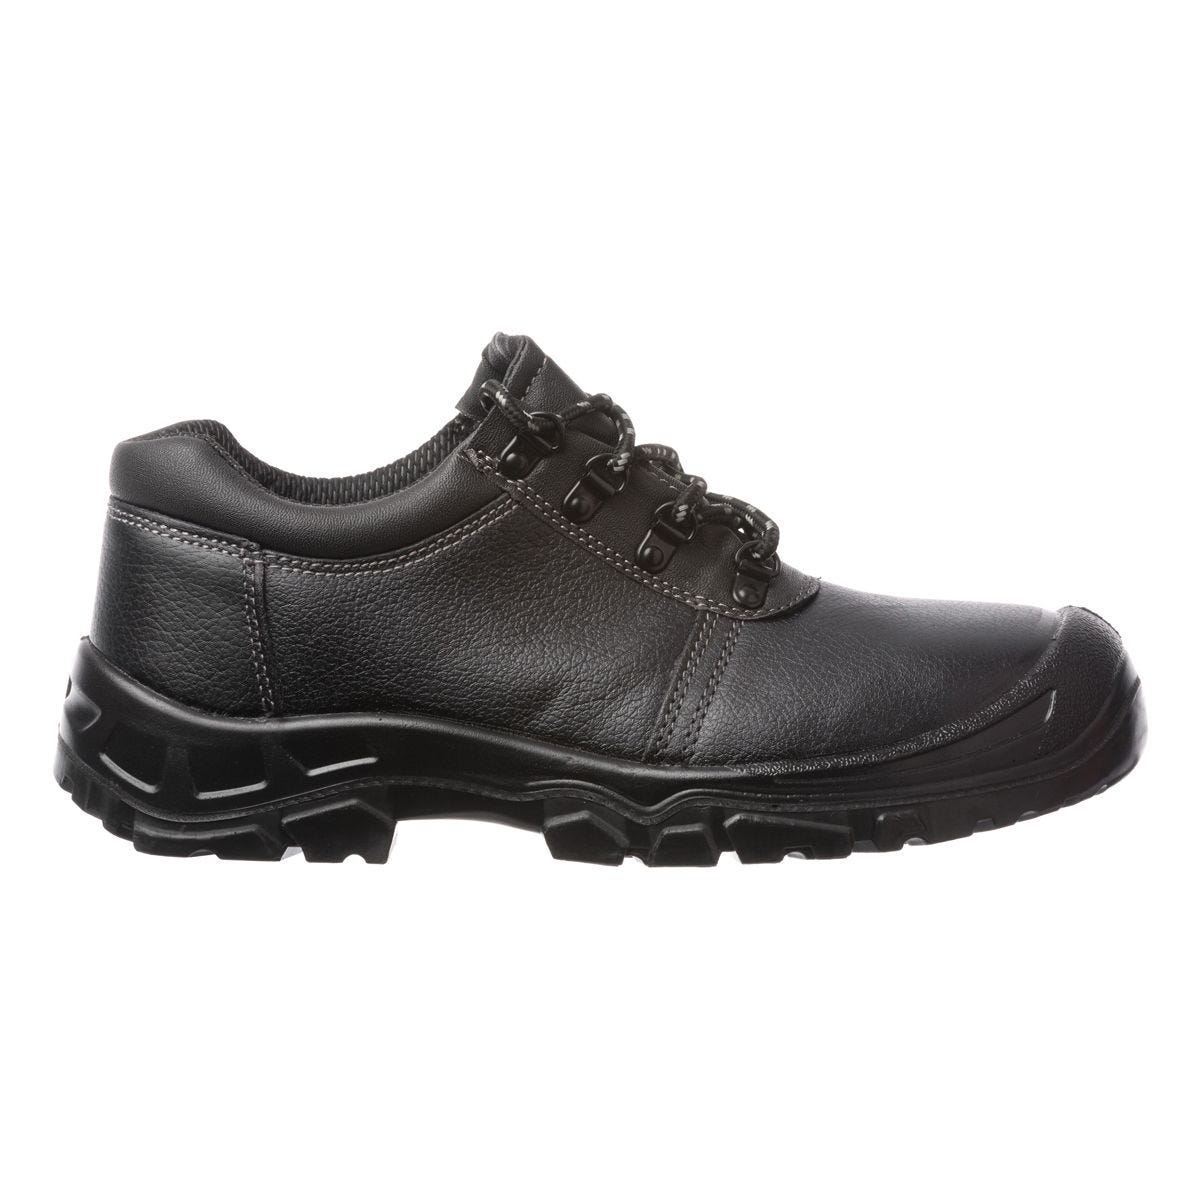 Chaussures de sécurité basses Azurite II S3 ESD noir - Coverguard - Taille 36 0